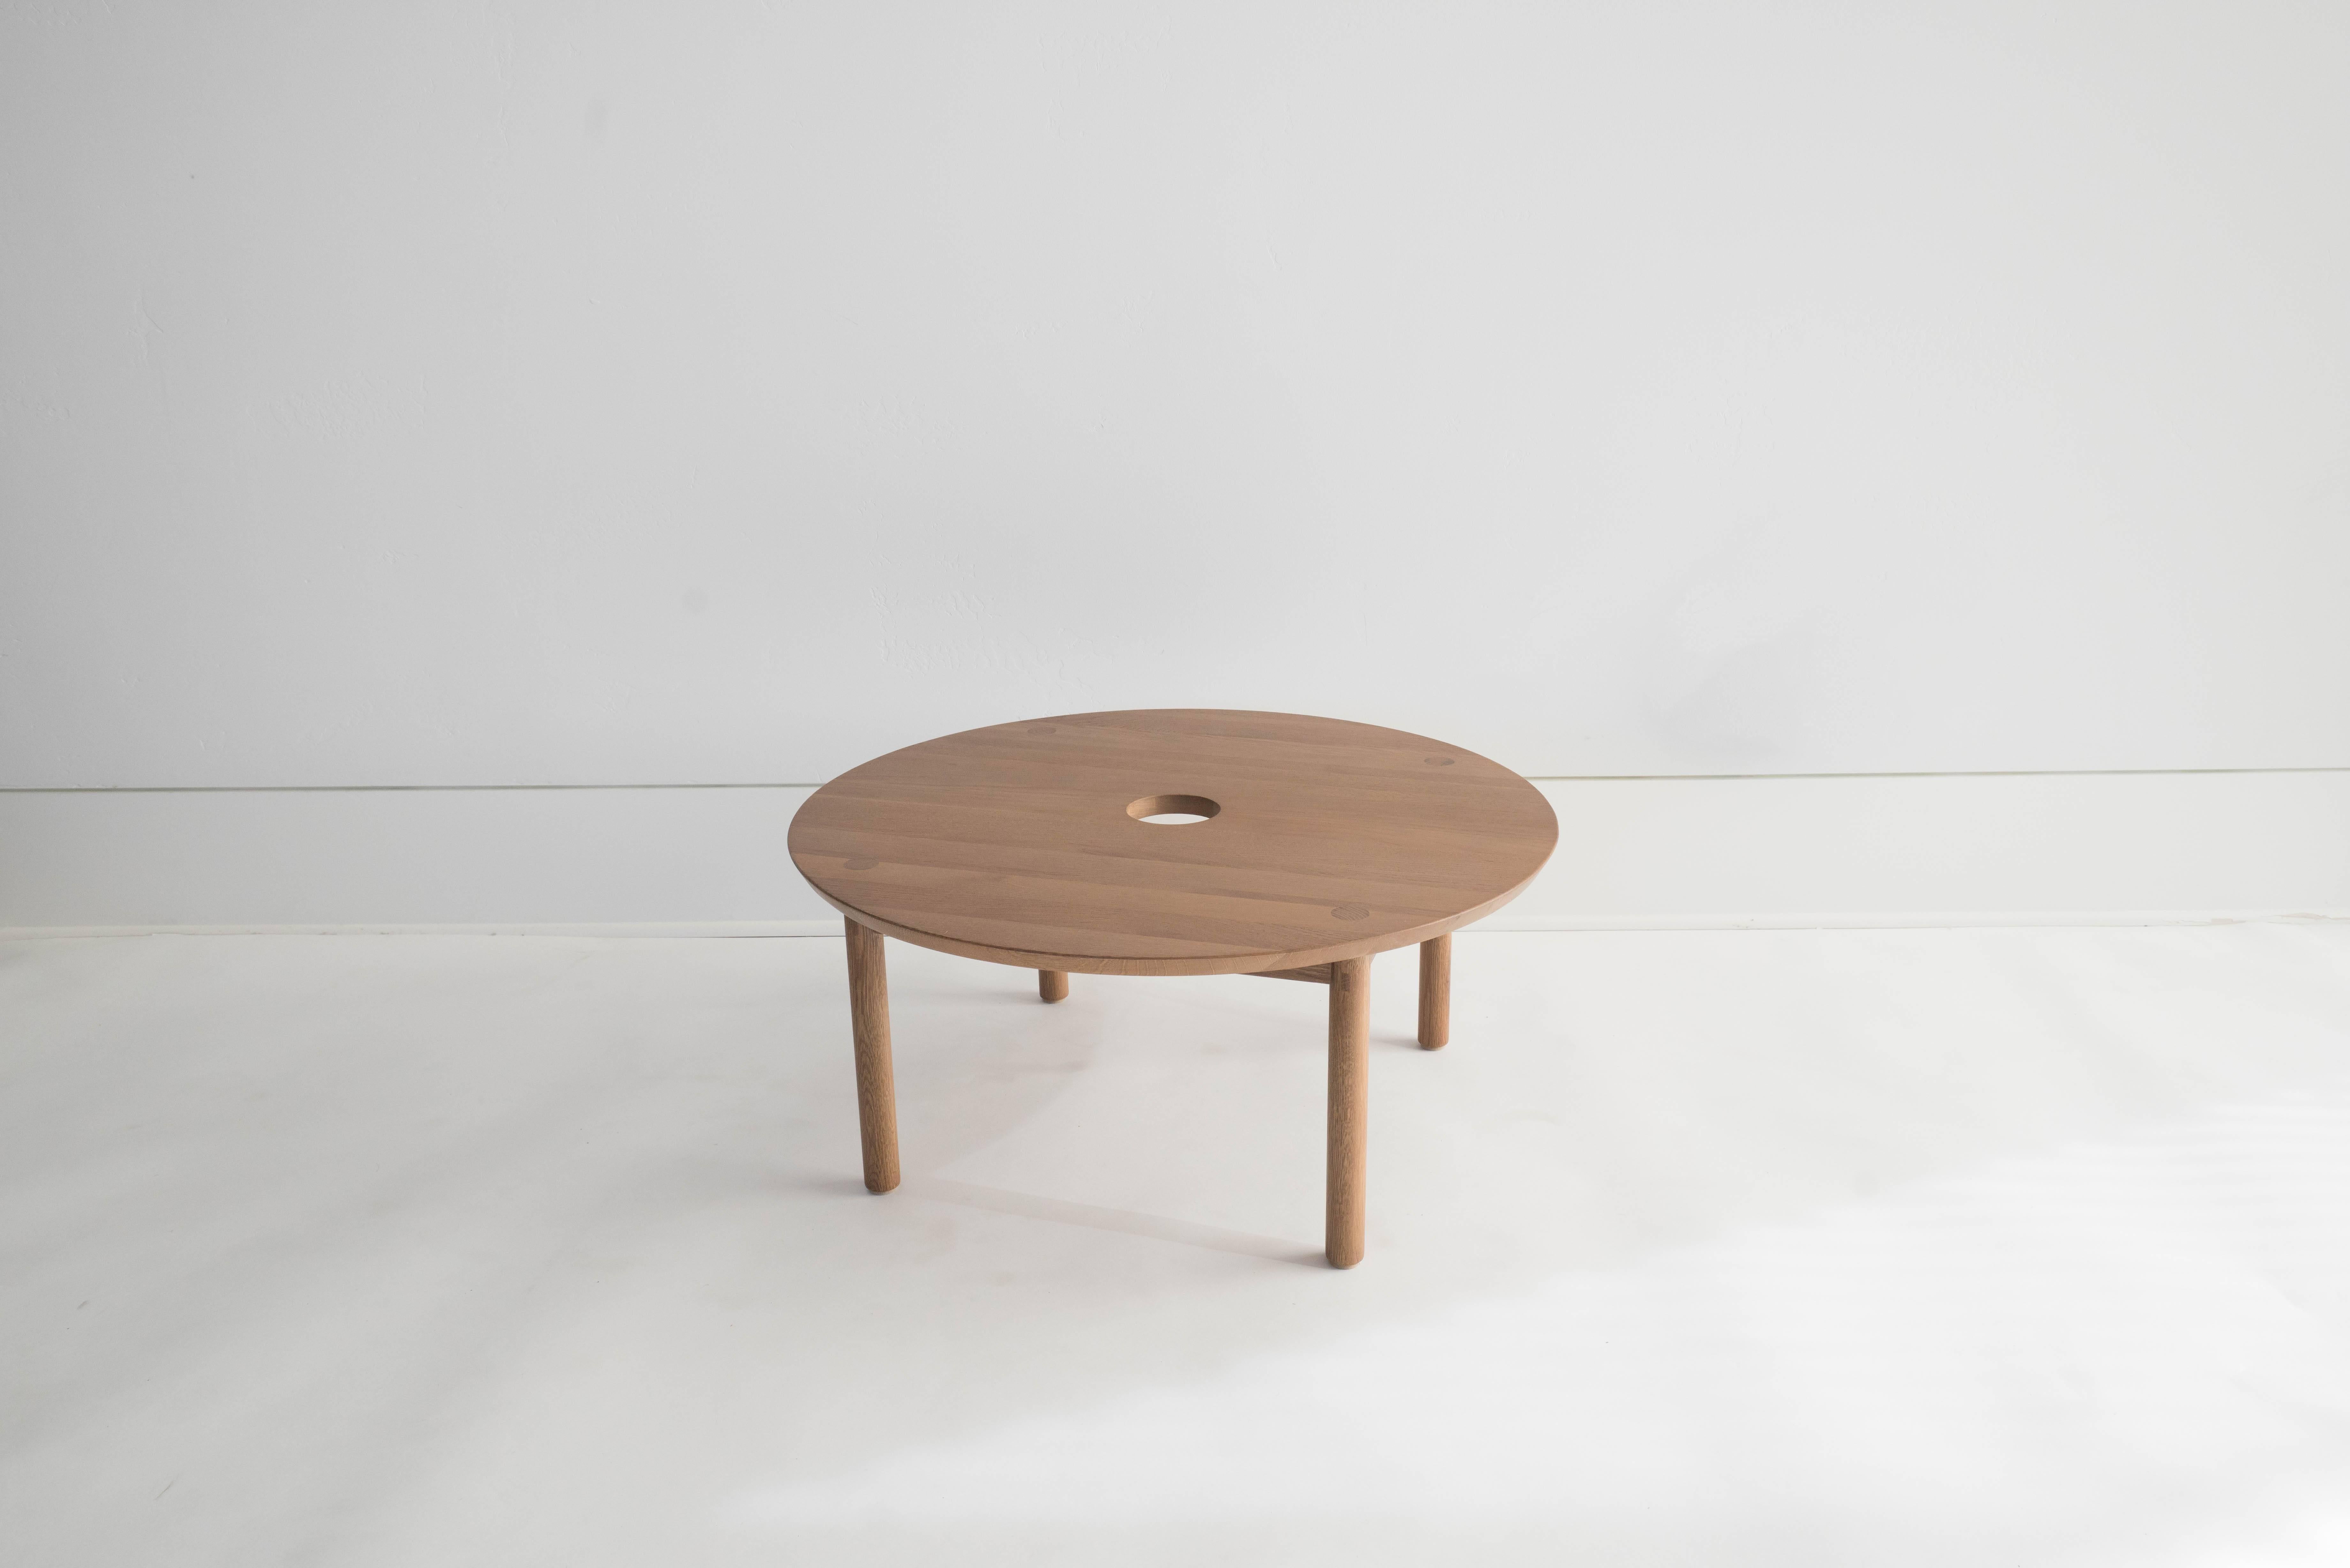 Sun at Six est un studio de conception de mobilier contemporain qui travaille avec des maîtres menuisiers chinois traditionnels pour fabriquer ses pièces à la main en utilisant la menuiserie traditionnelle. Notre table basse ronde classique. Nous